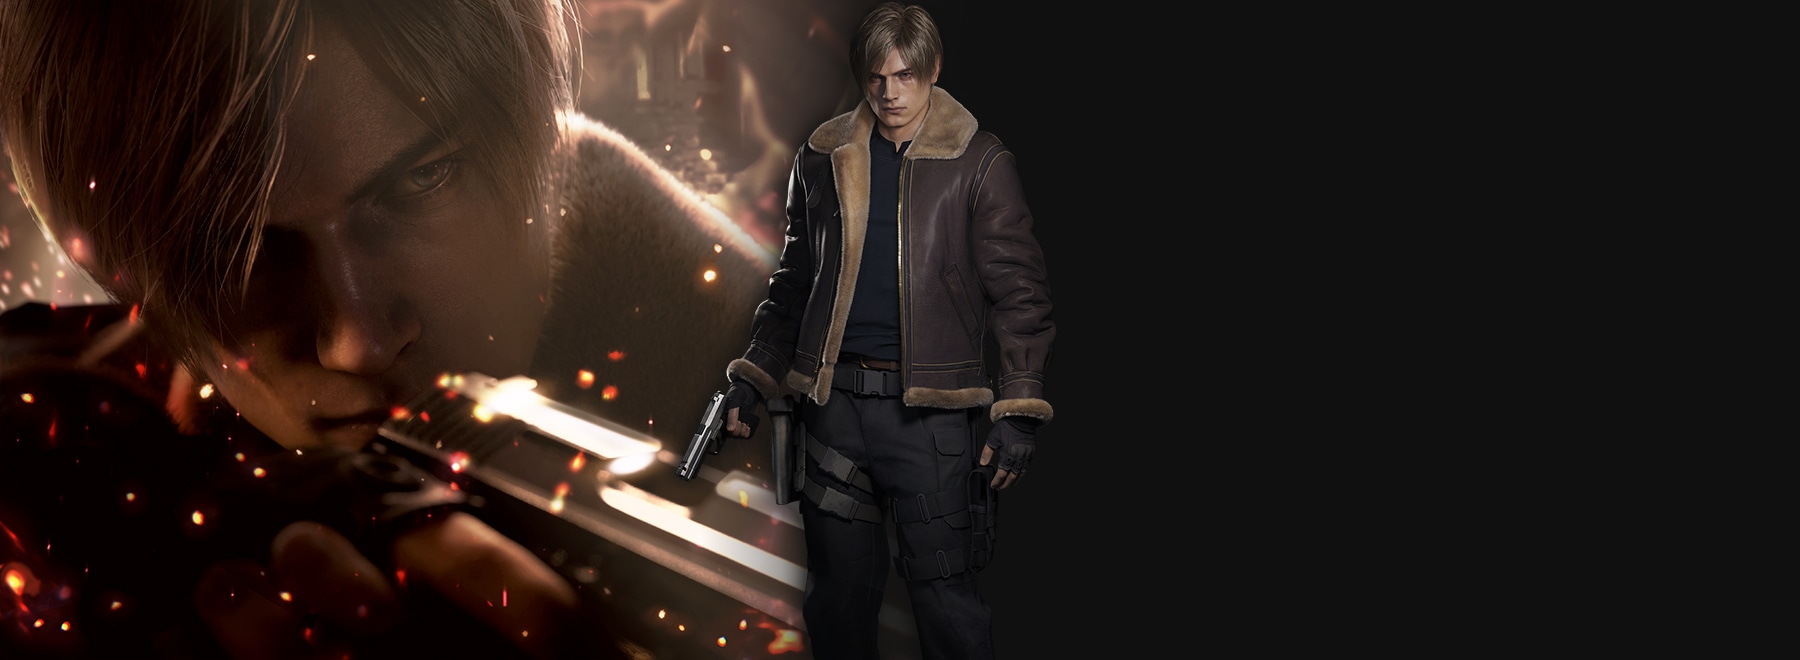 Resident Evil 4, PC